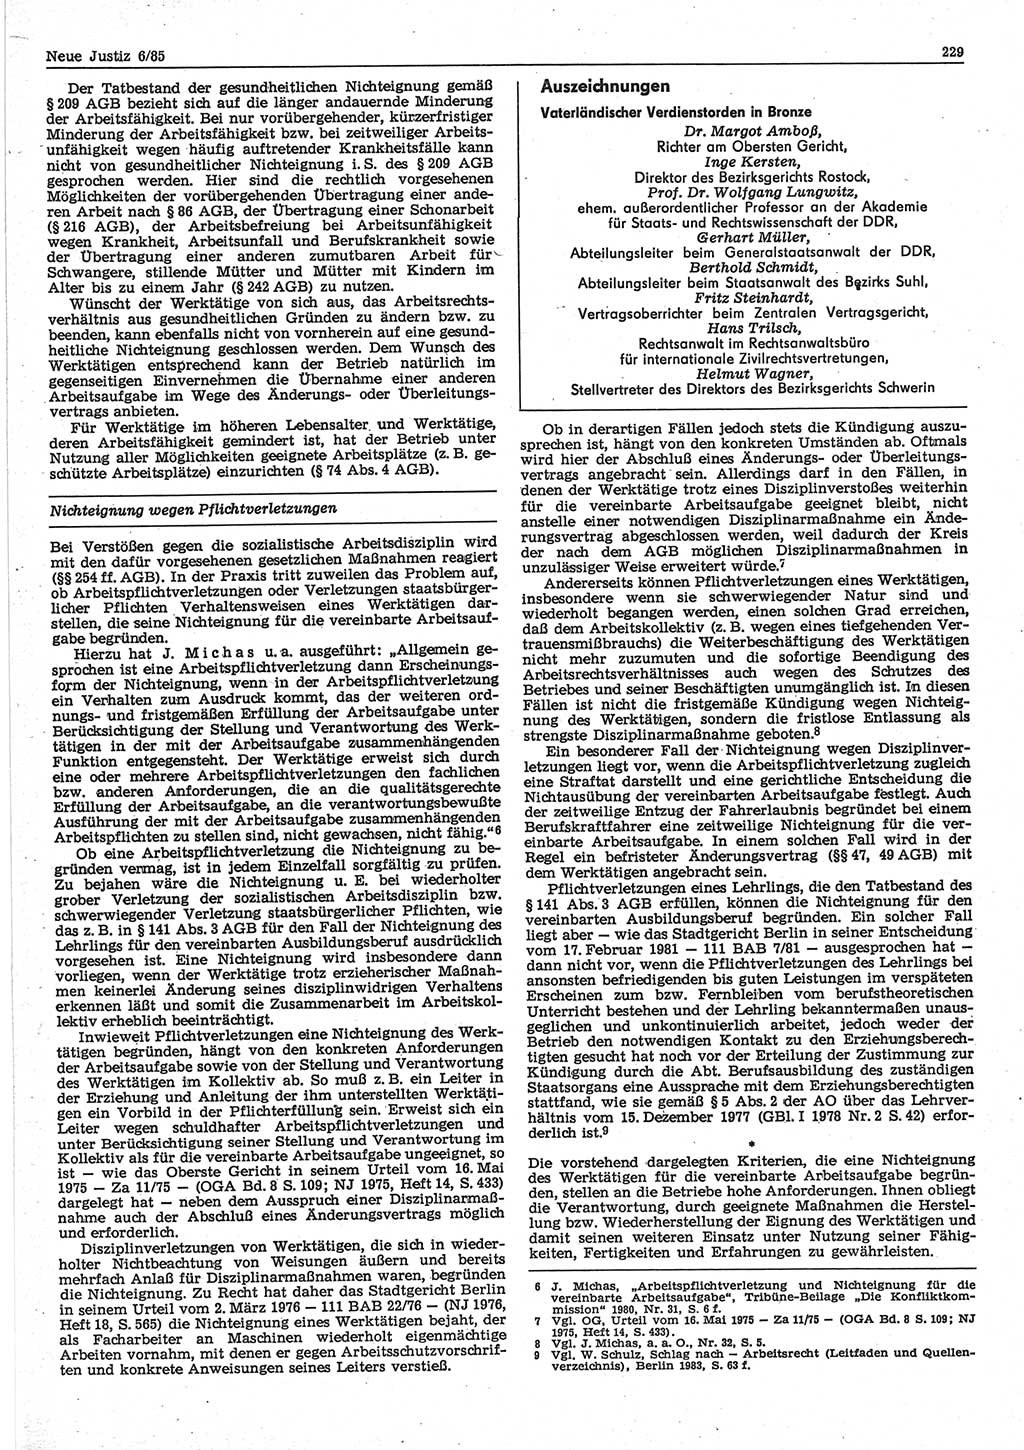 Neue Justiz (NJ), Zeitschrift für sozialistisches Recht und Gesetzlichkeit [Deutsche Demokratische Republik (DDR)], 39. Jahrgang 1985, Seite 229 (NJ DDR 1985, S. 229)